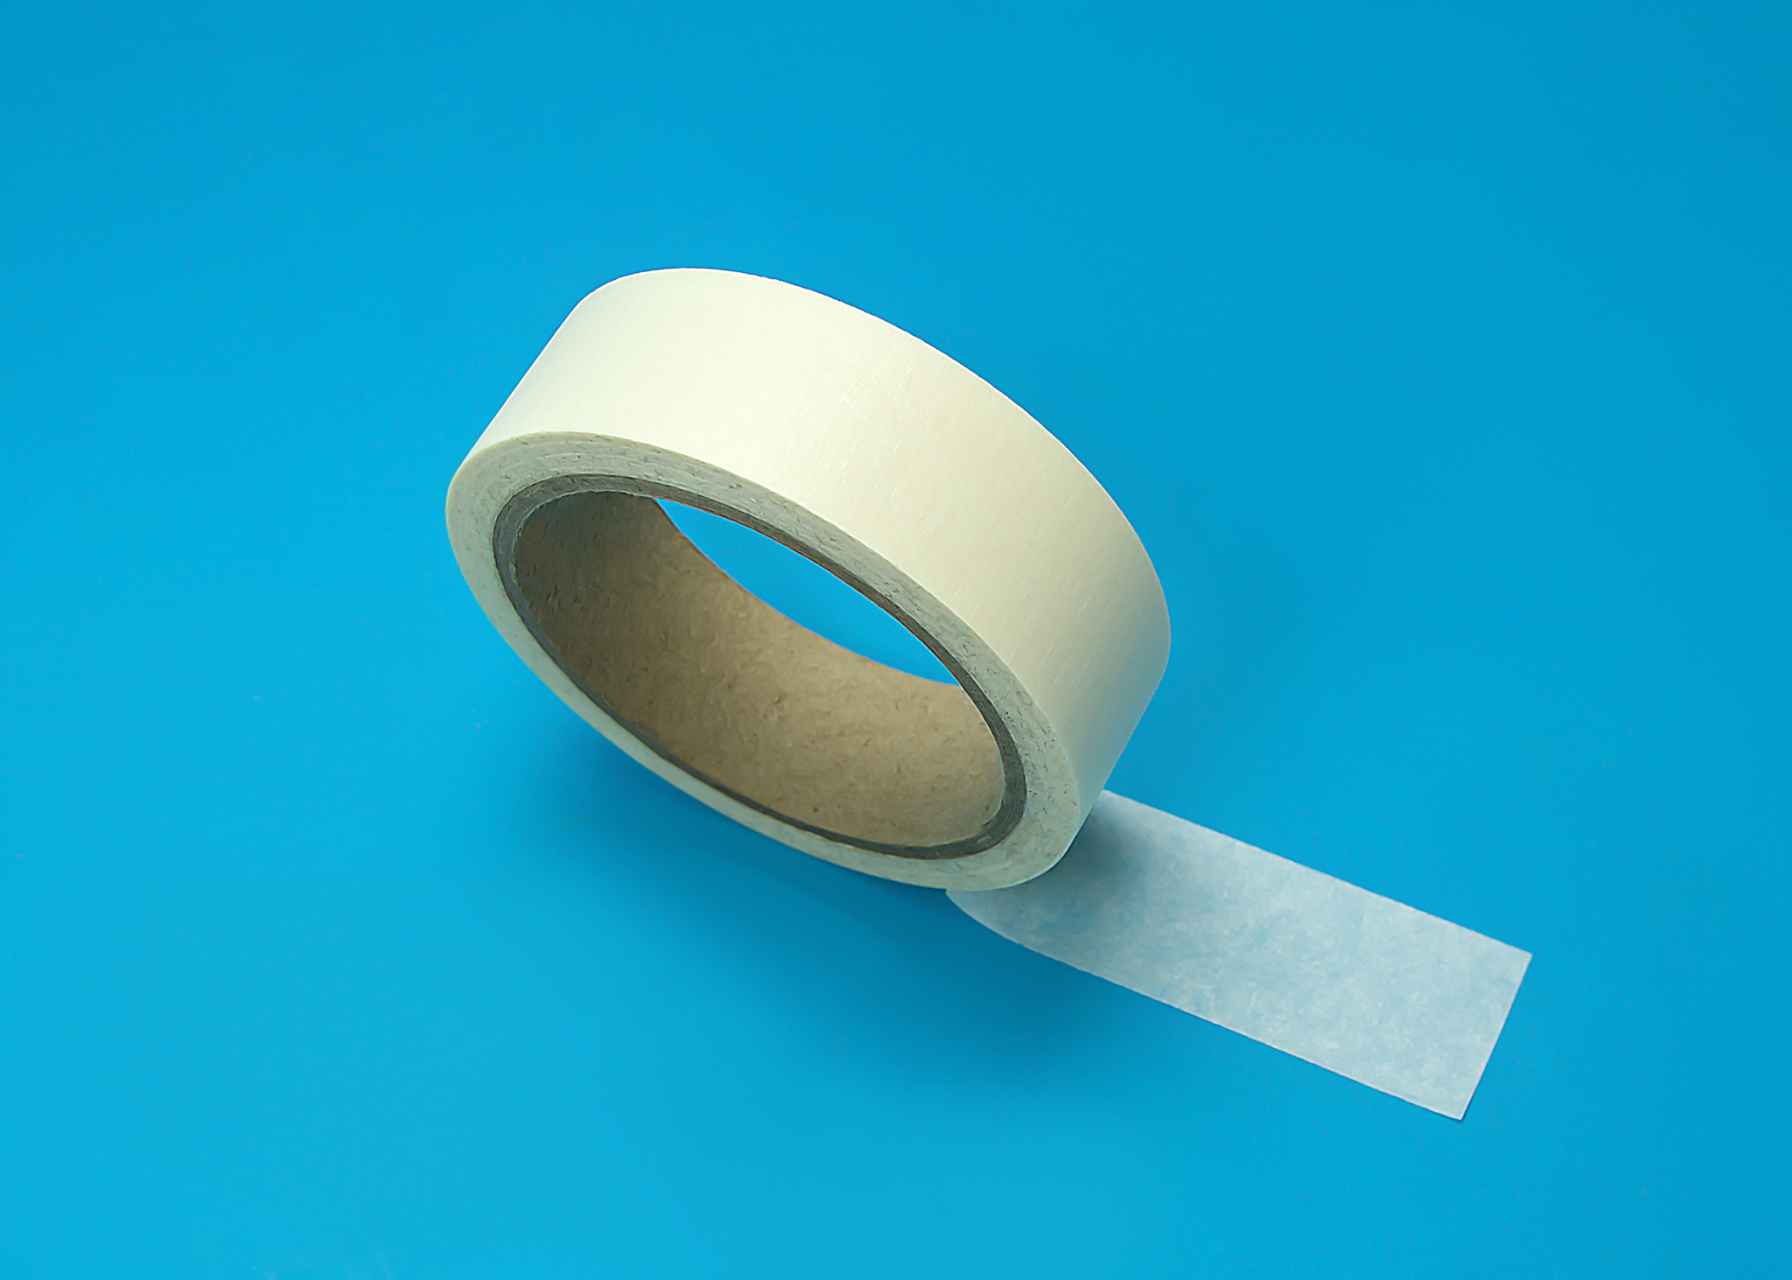 医用透气胶带的常见问题科普  医用透气胶带是一种常见的医疗用品